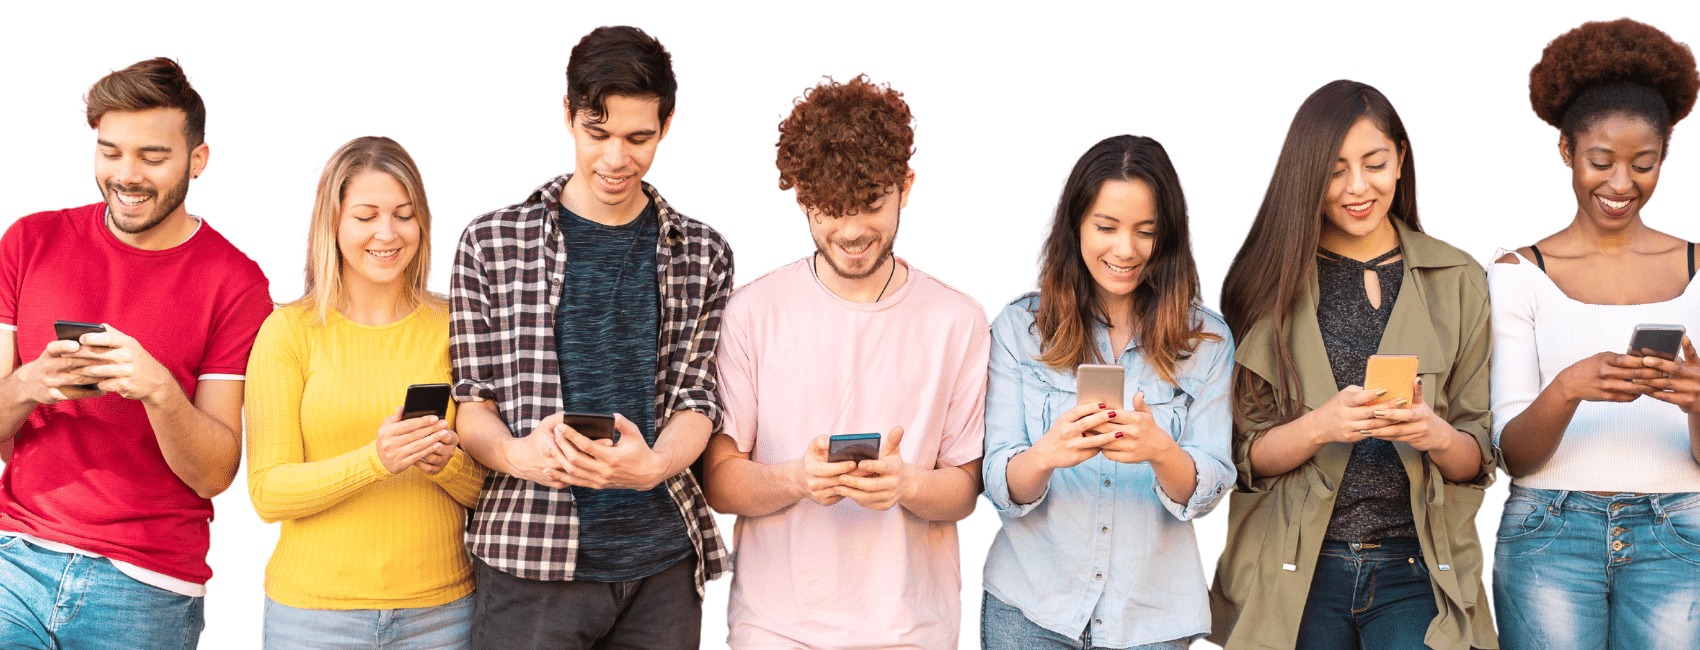 Millennial men and women using wireless phones